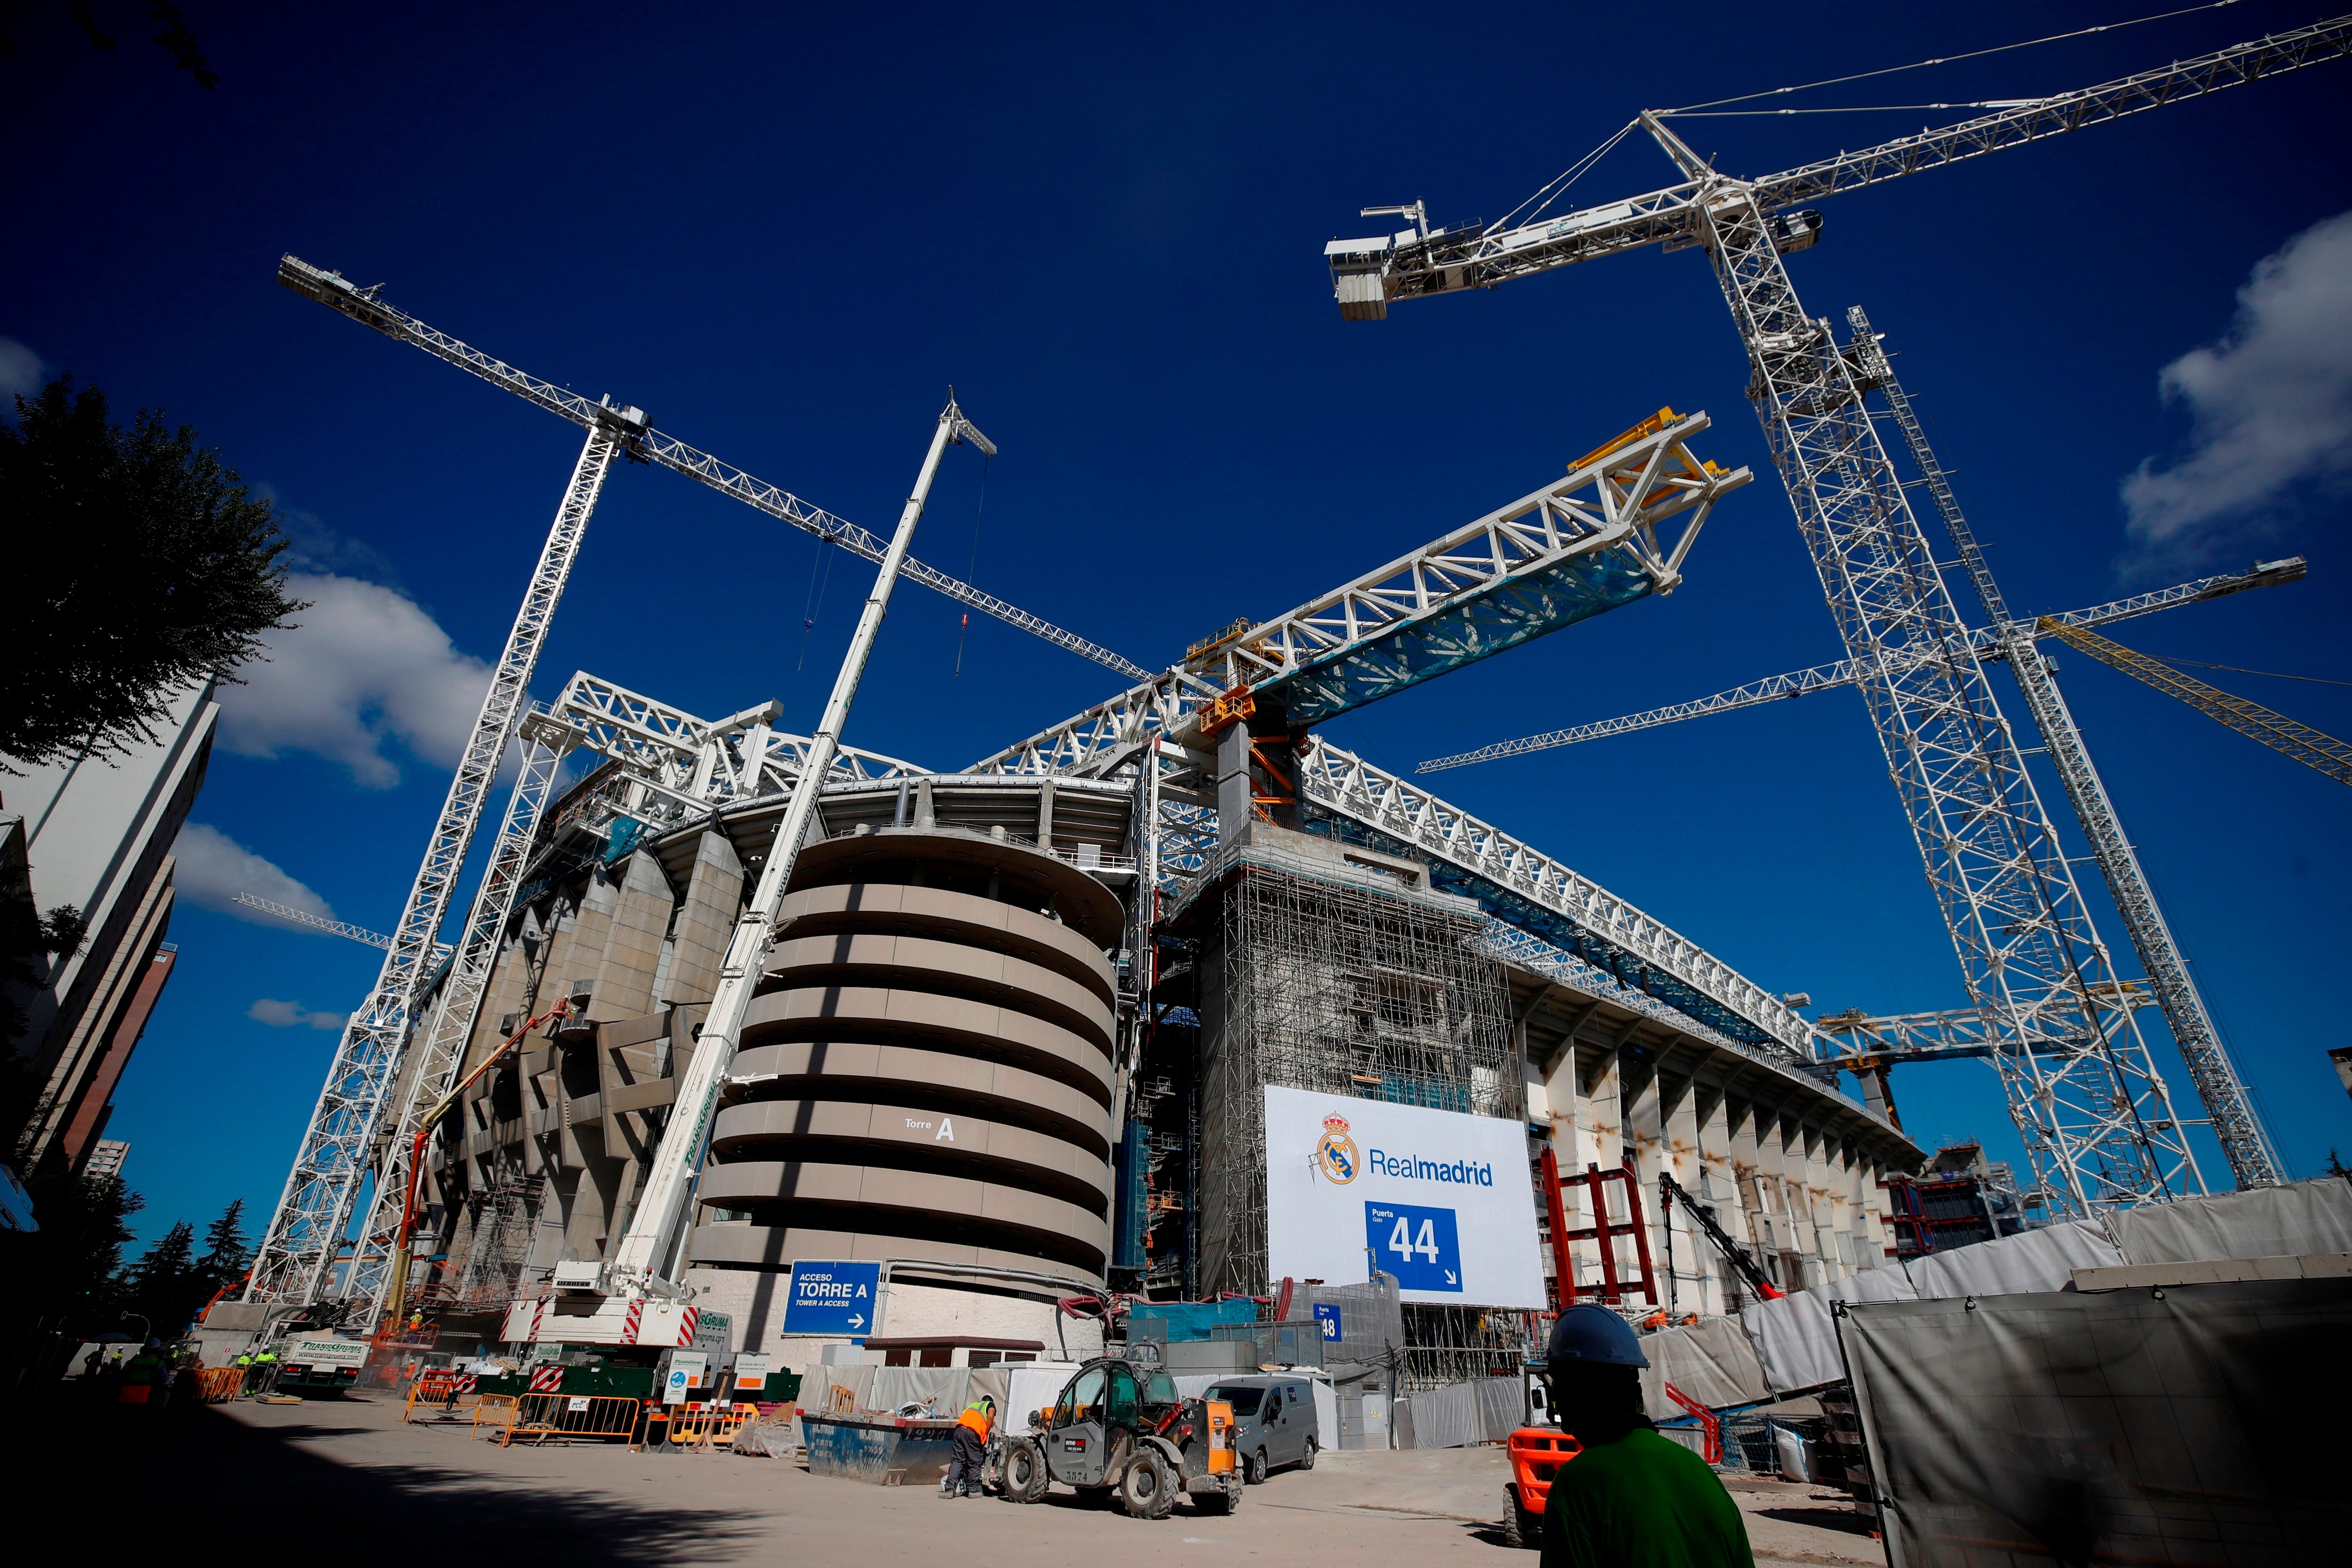 Vista, este viernes, del Santiago Bernabéu, que volverá a acoger un partido de fútbol contra el Celta de Vigo el próximo domingo, tras 560 días y en mitad de las obras de remodelación del estadio. EFE/Javier Lizón